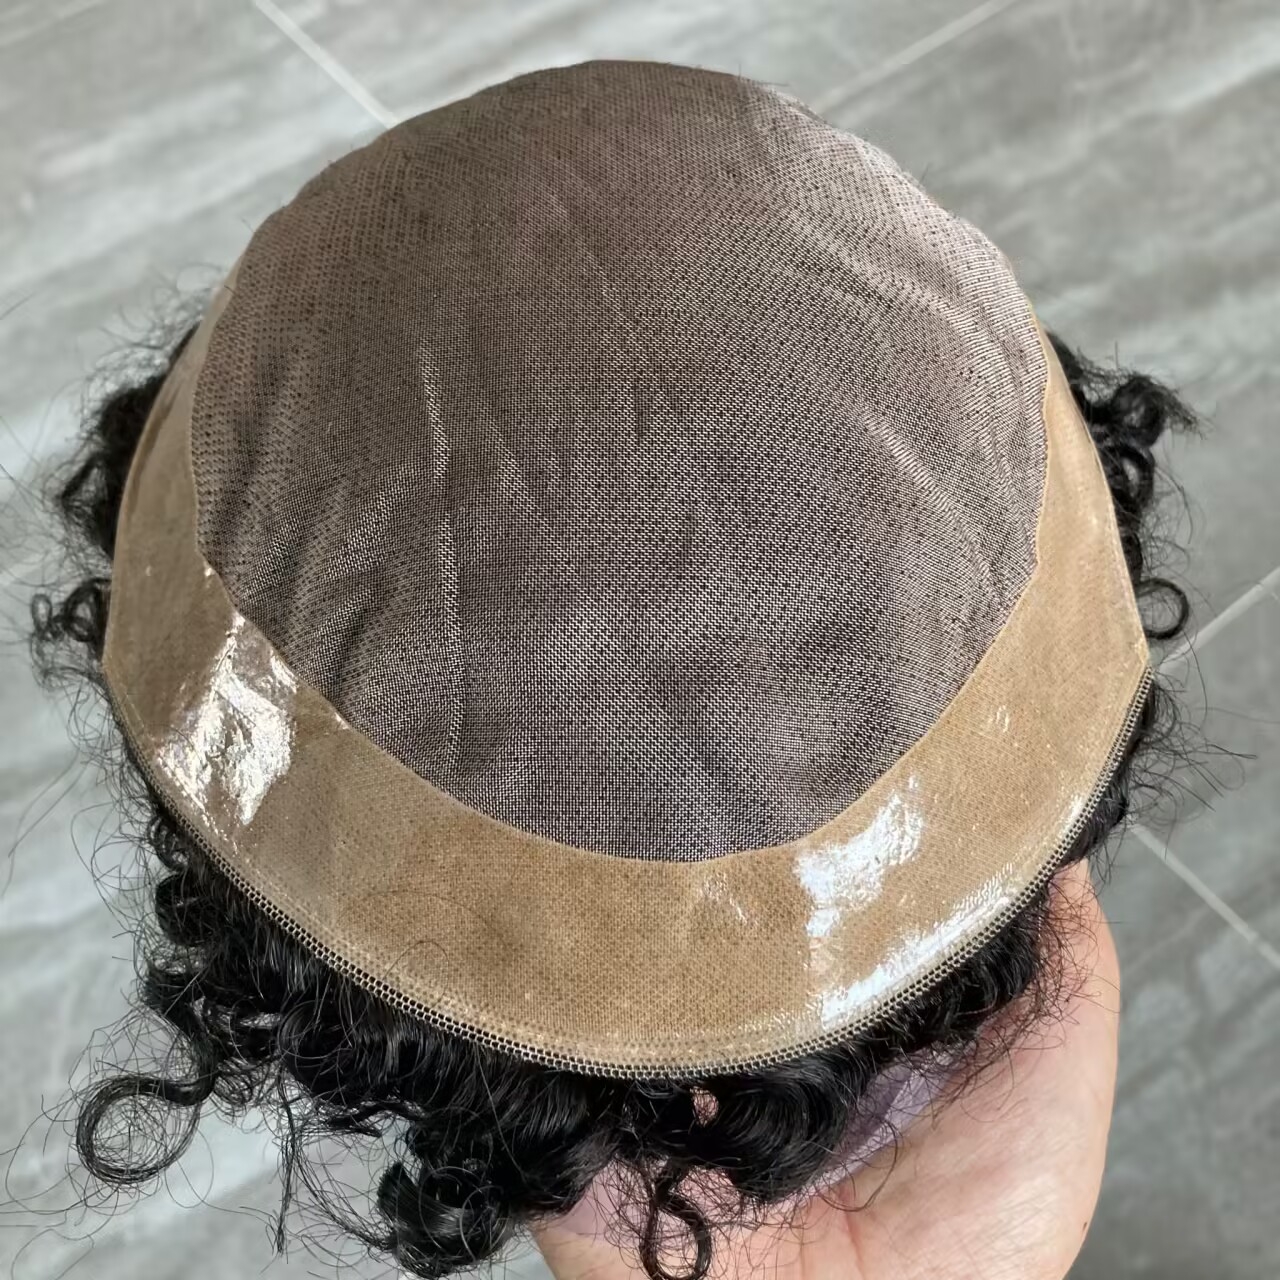 Afo Man 15mm Jerry Curly Men Toupee Traspirante Mono LacePU Intorno alla base Uomo Parrucche capelli umani Pezzi Sistema Protesi Capelli naturali